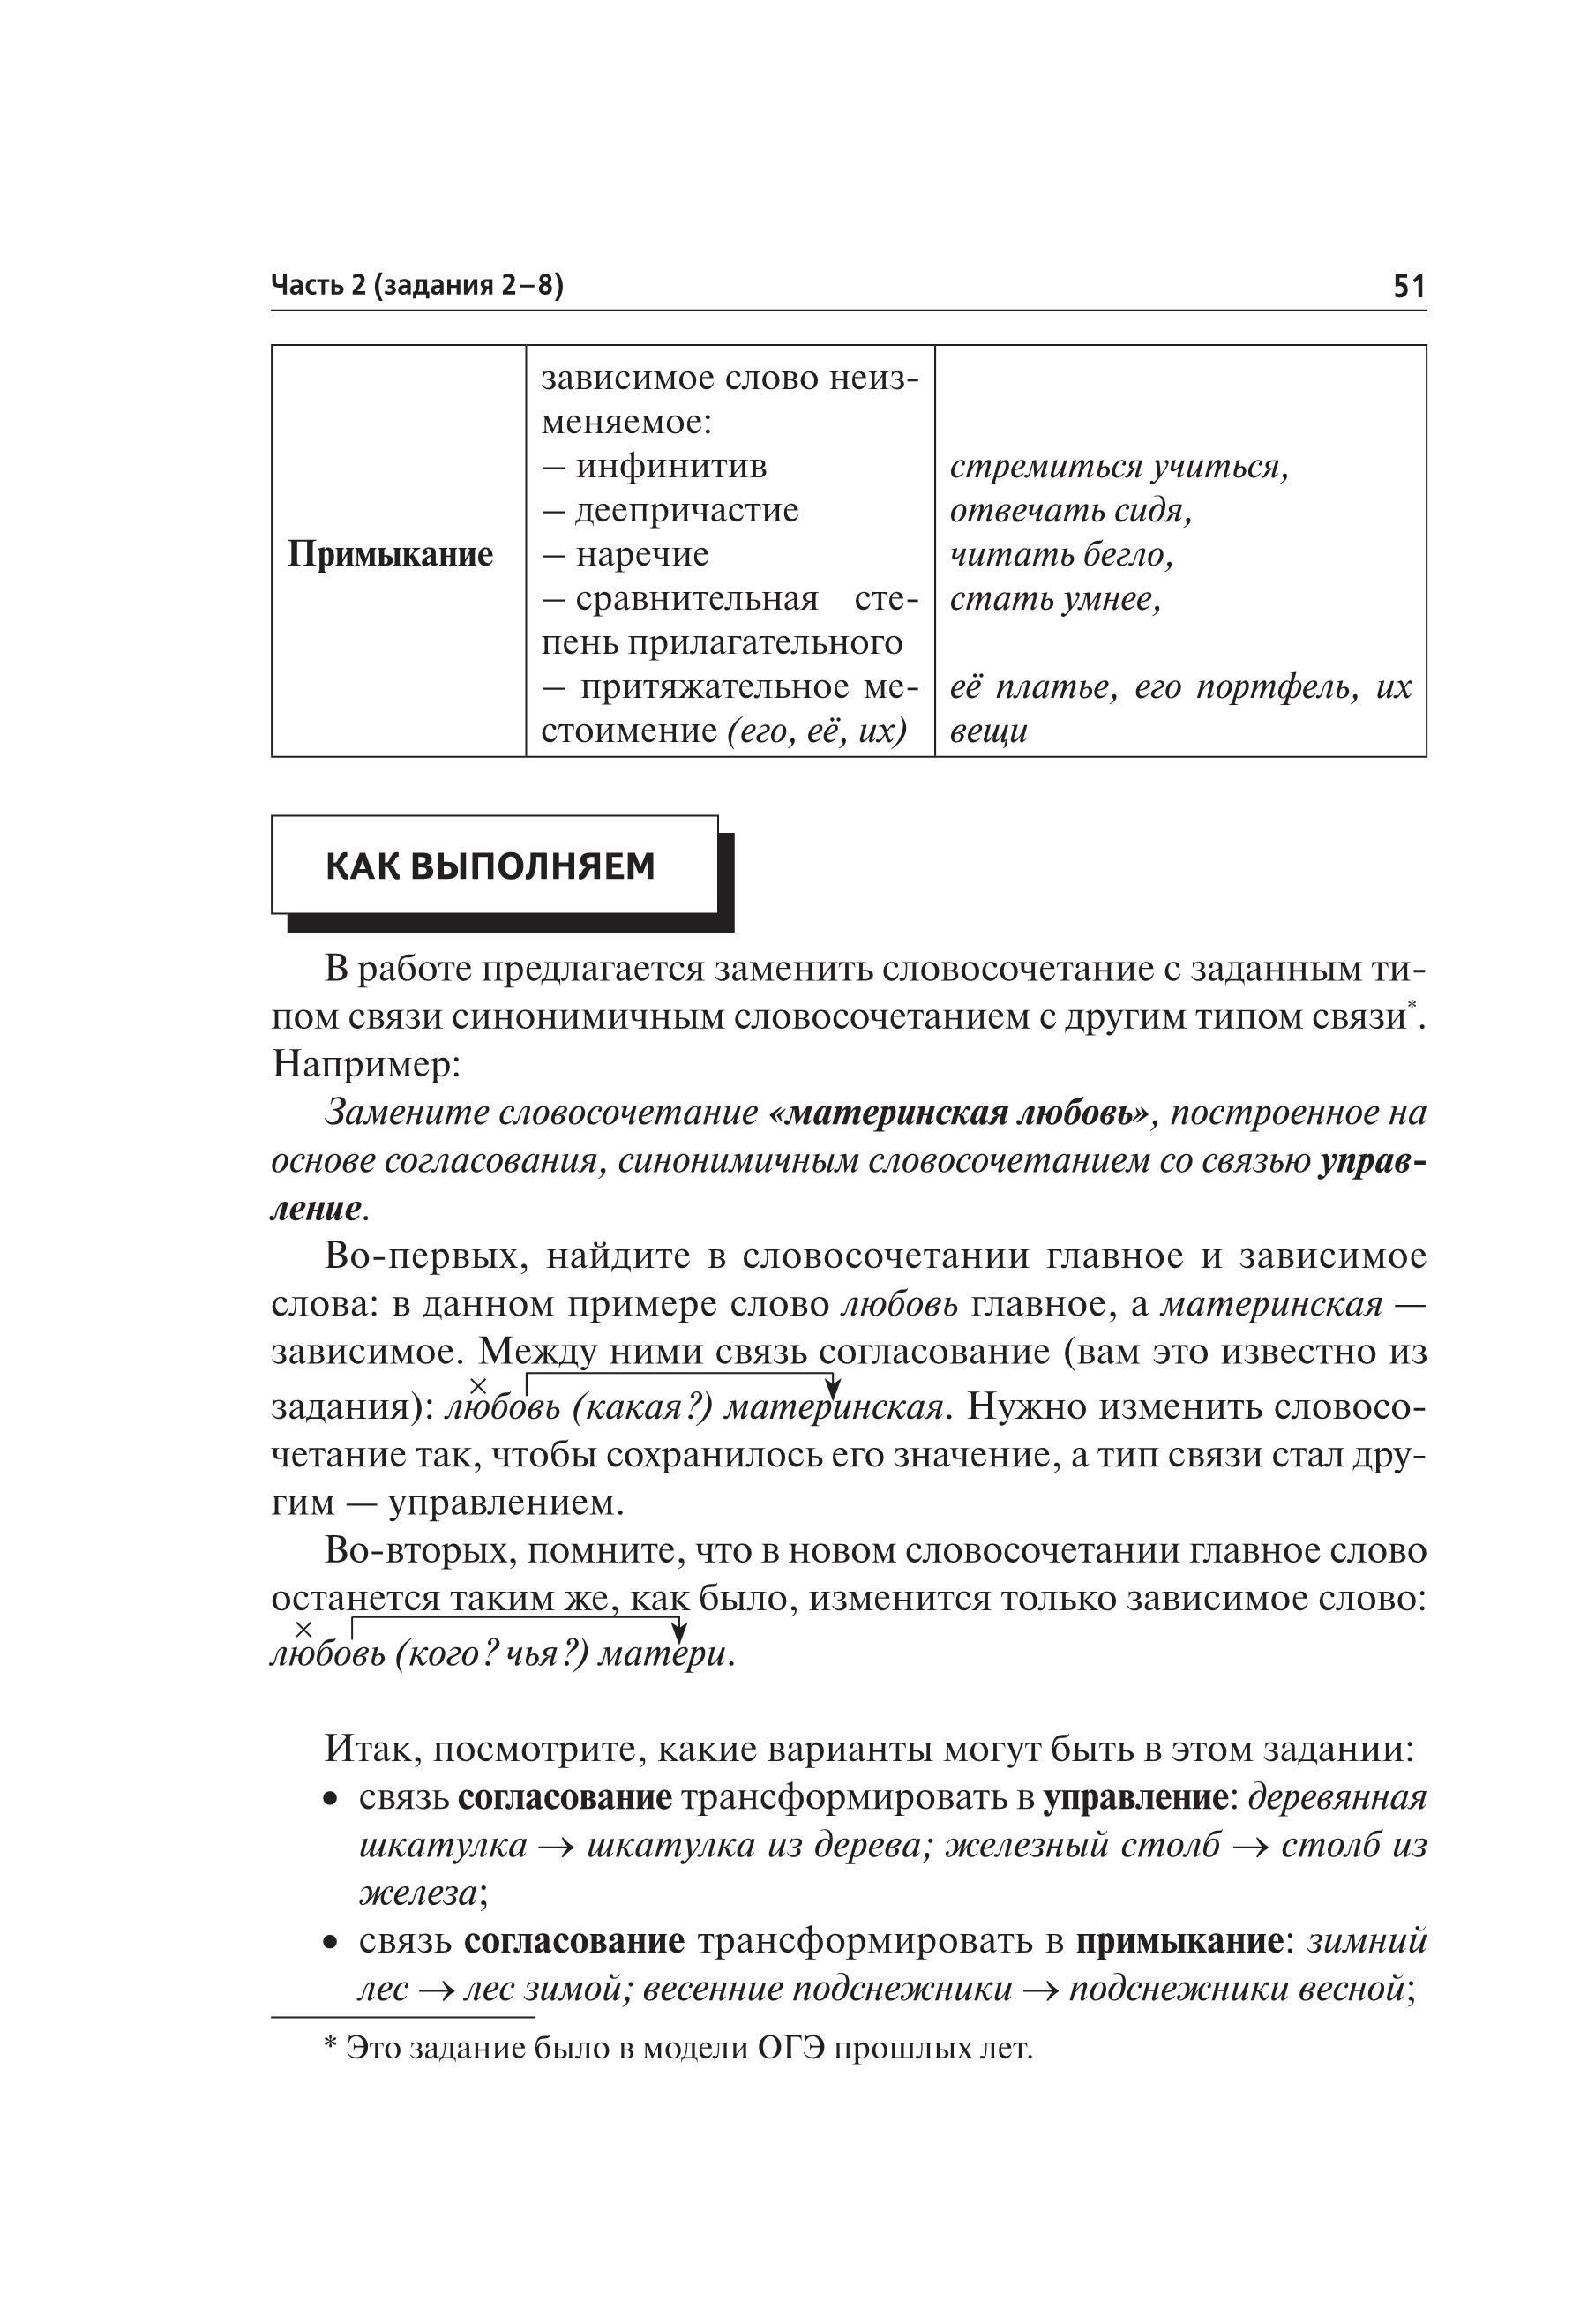 Русский язык. Подготовка к ОГЭ-2020. 9 класс. 30 тренировочных вариантов по демоверсии 2020 года